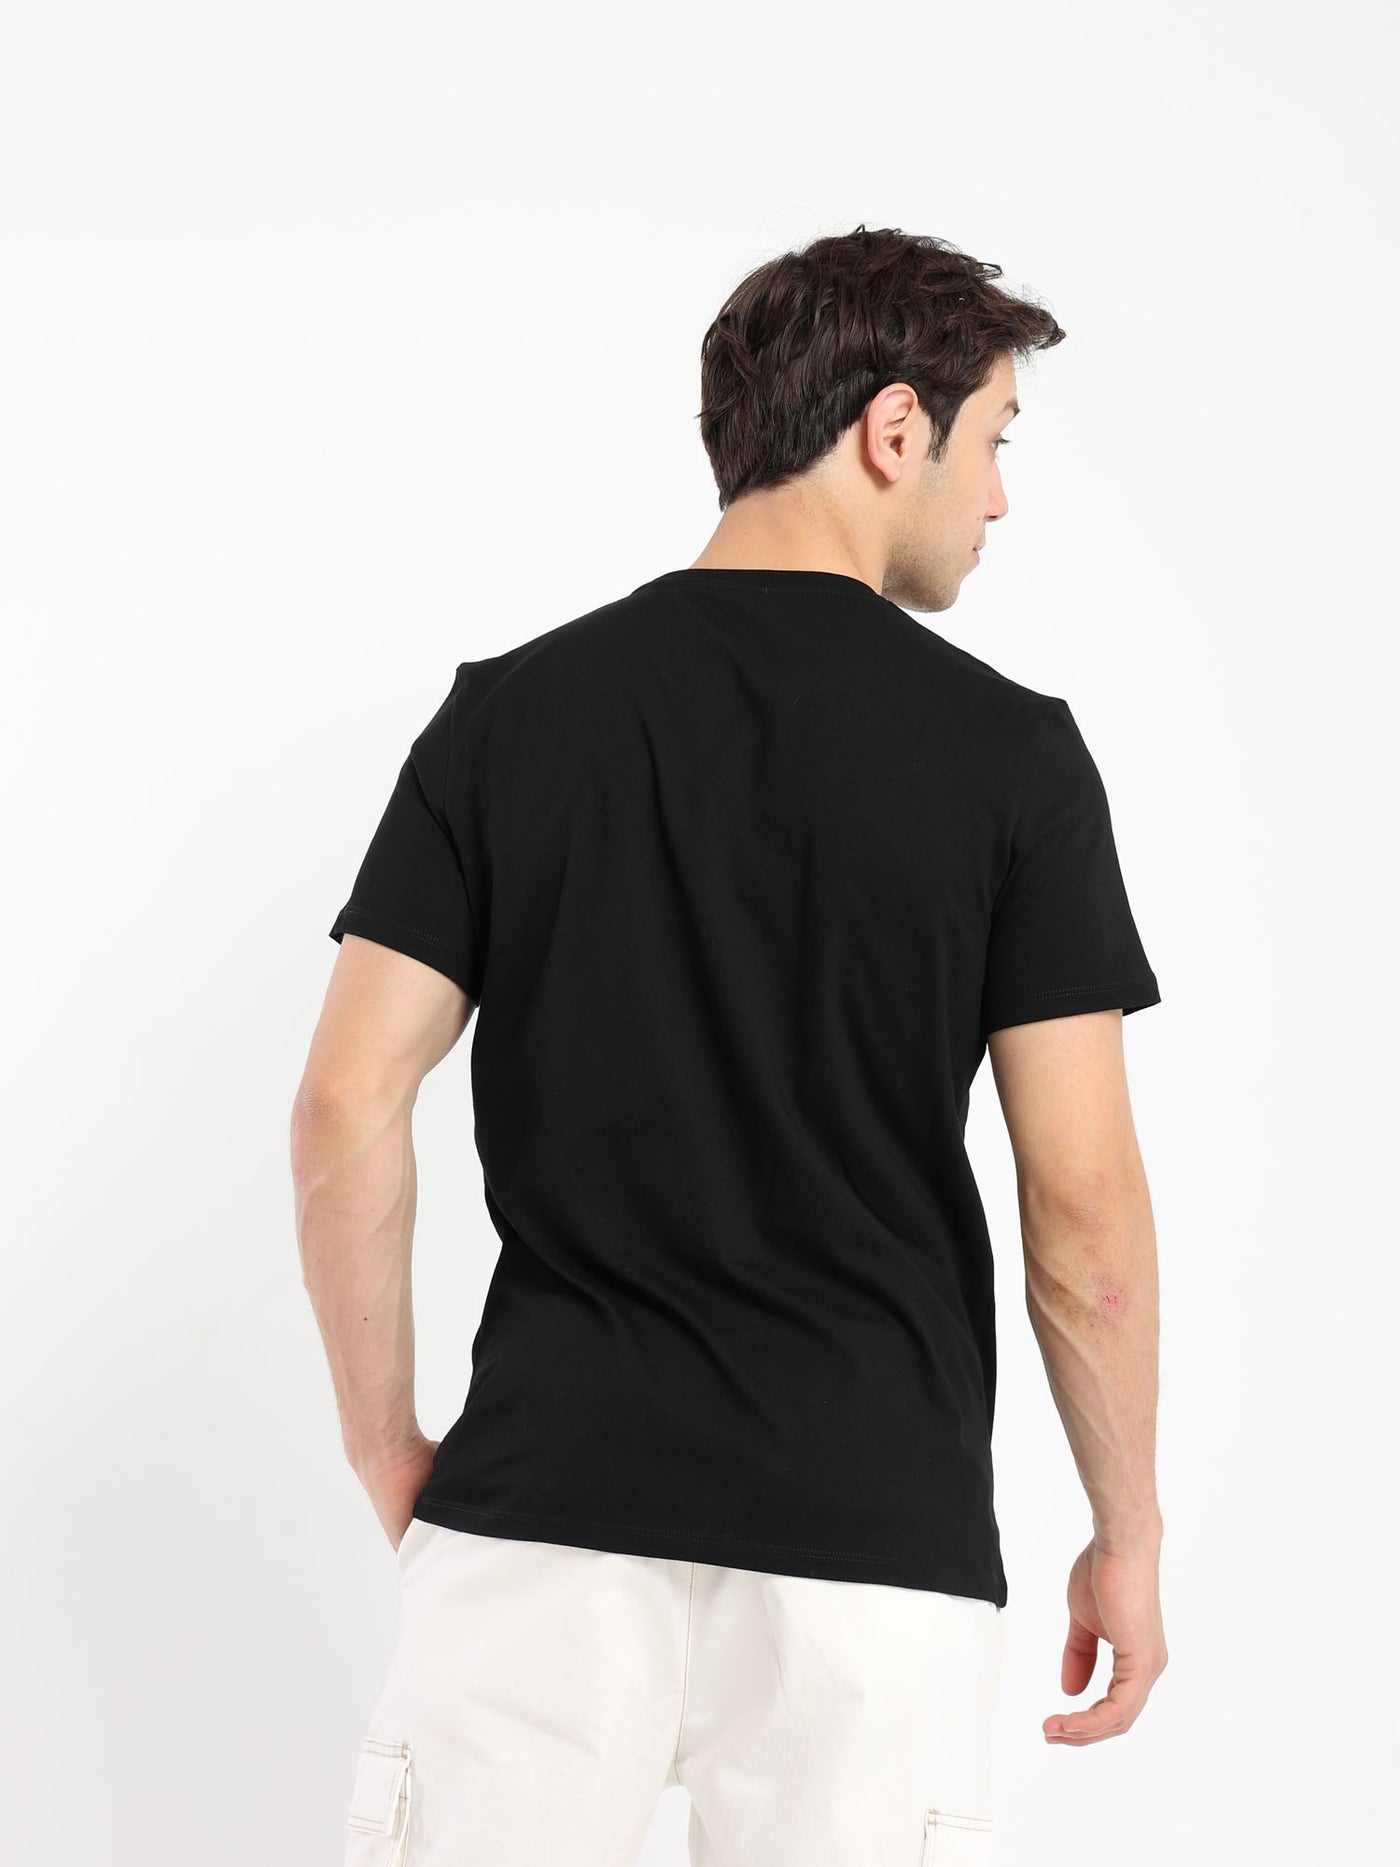 T-Shirt - "Silkscreen Comic" Front Print - Short Sleeves